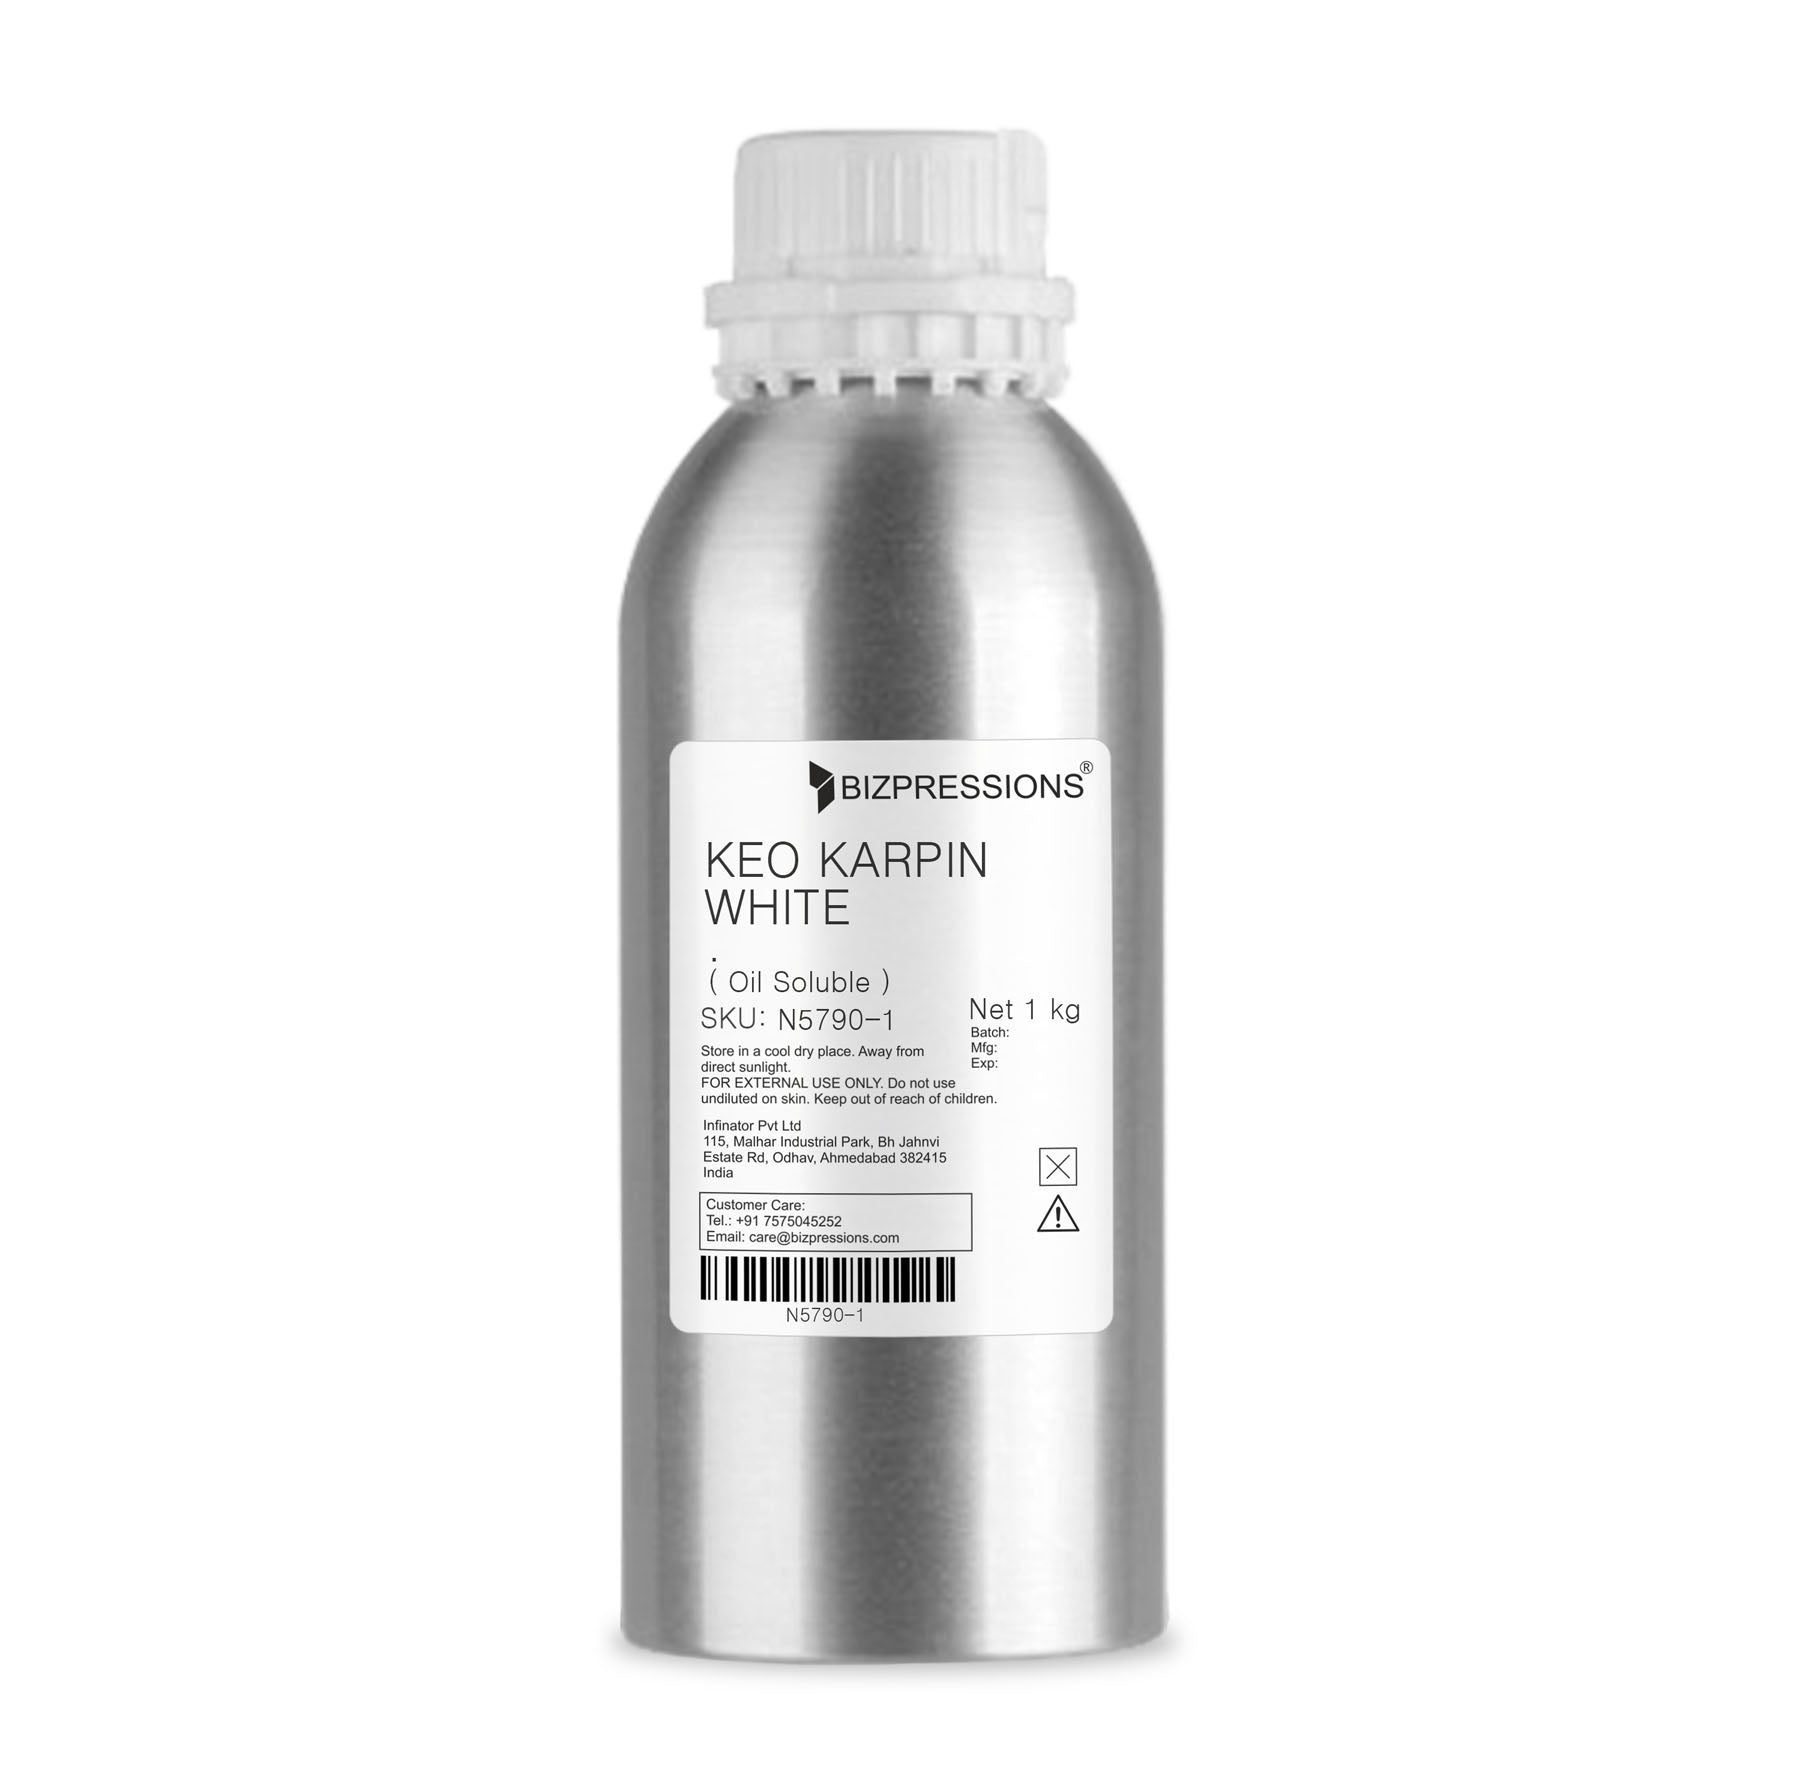 KEO KARPIN WHITE - Fragrance ( Oil Soluble ) - 1 kg